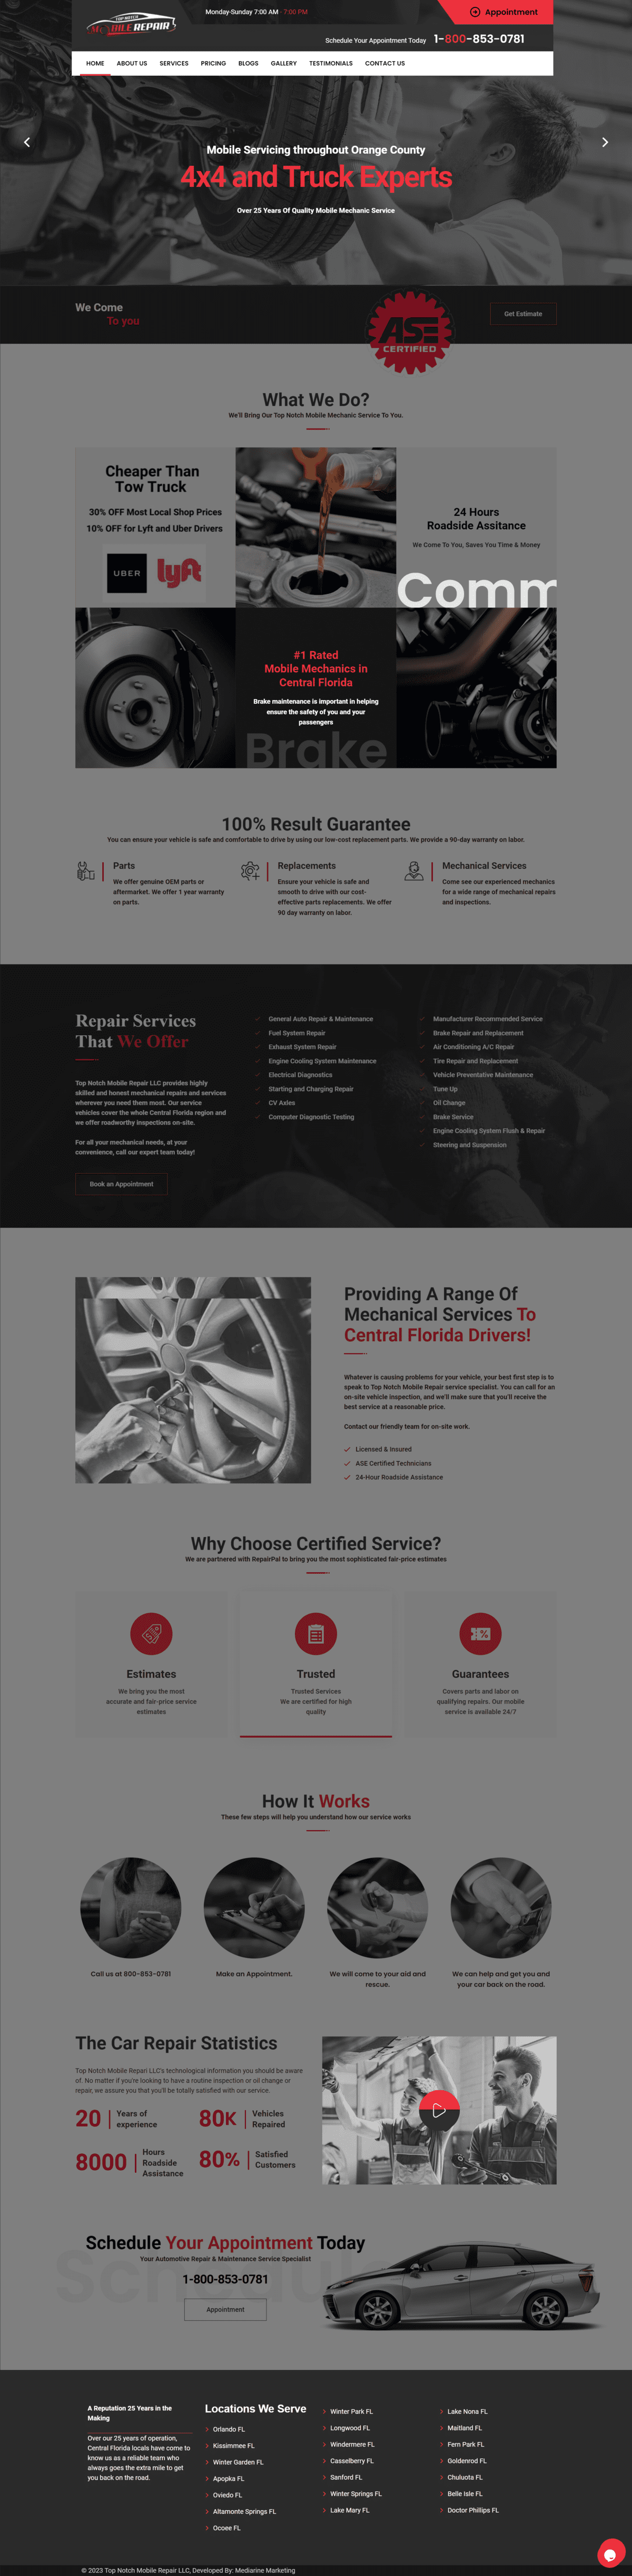 Website design company for Mechanics